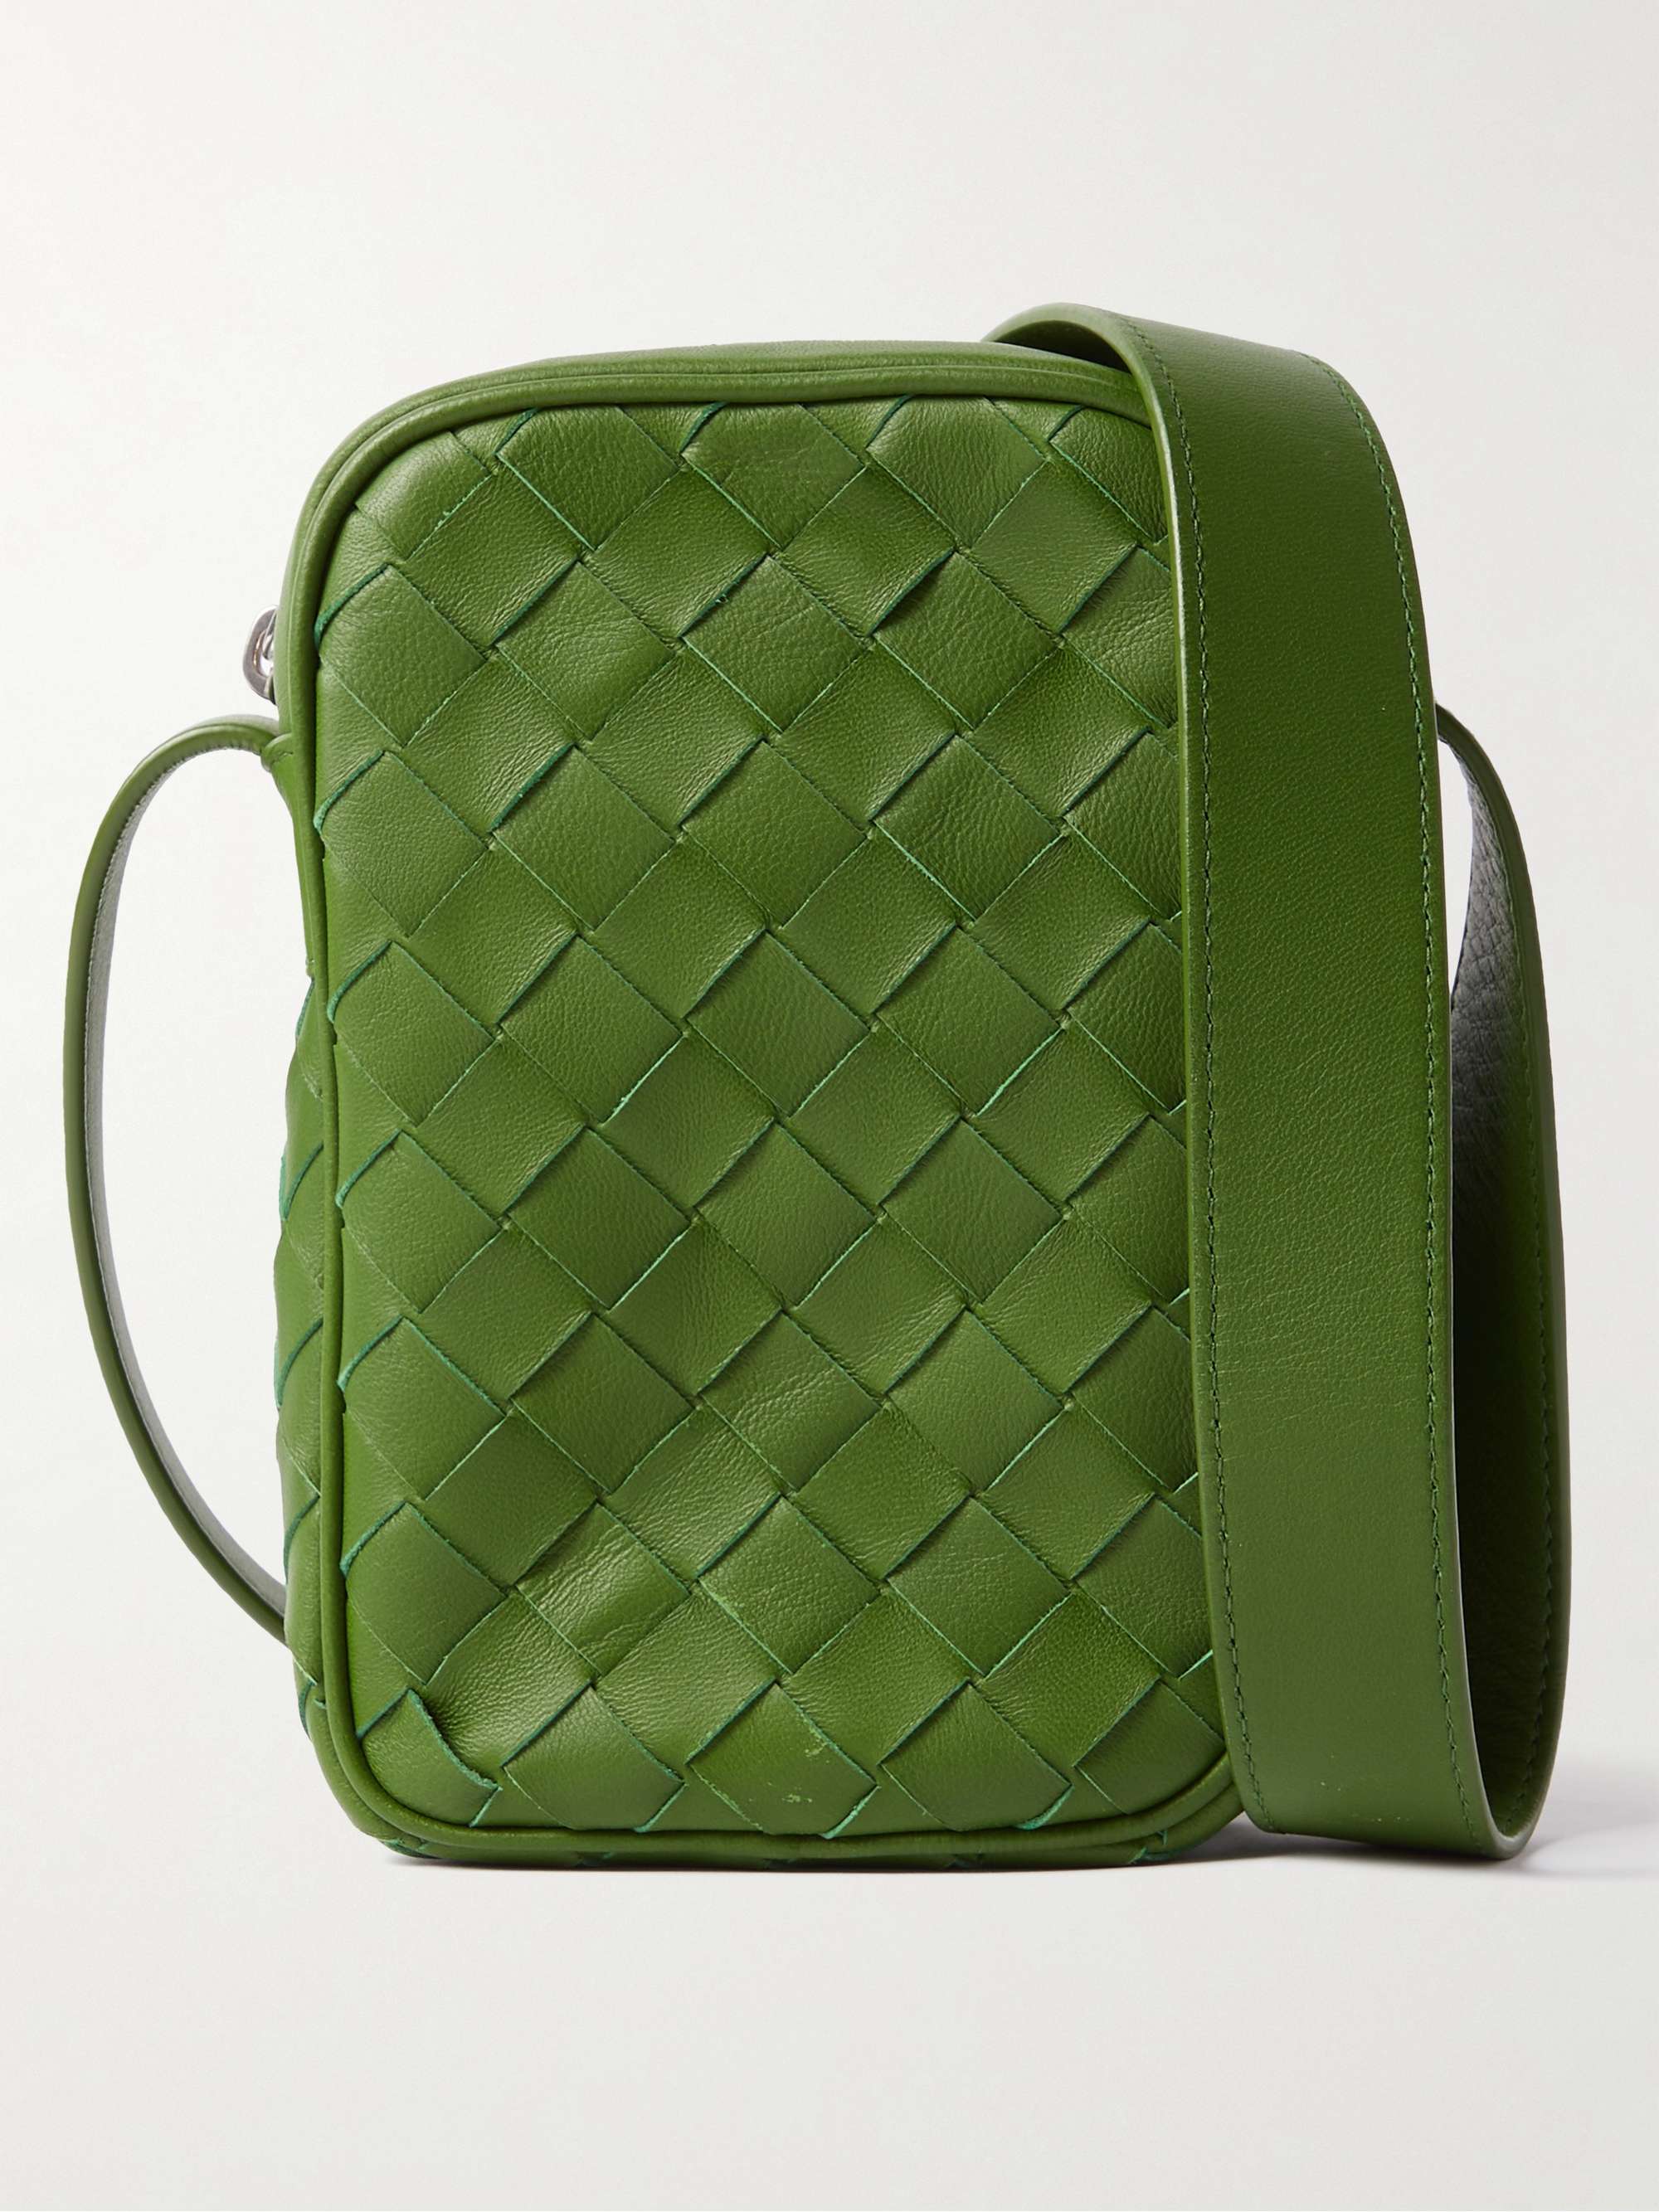 Bottega Veneta Pouch in Green Intrecciato Leather